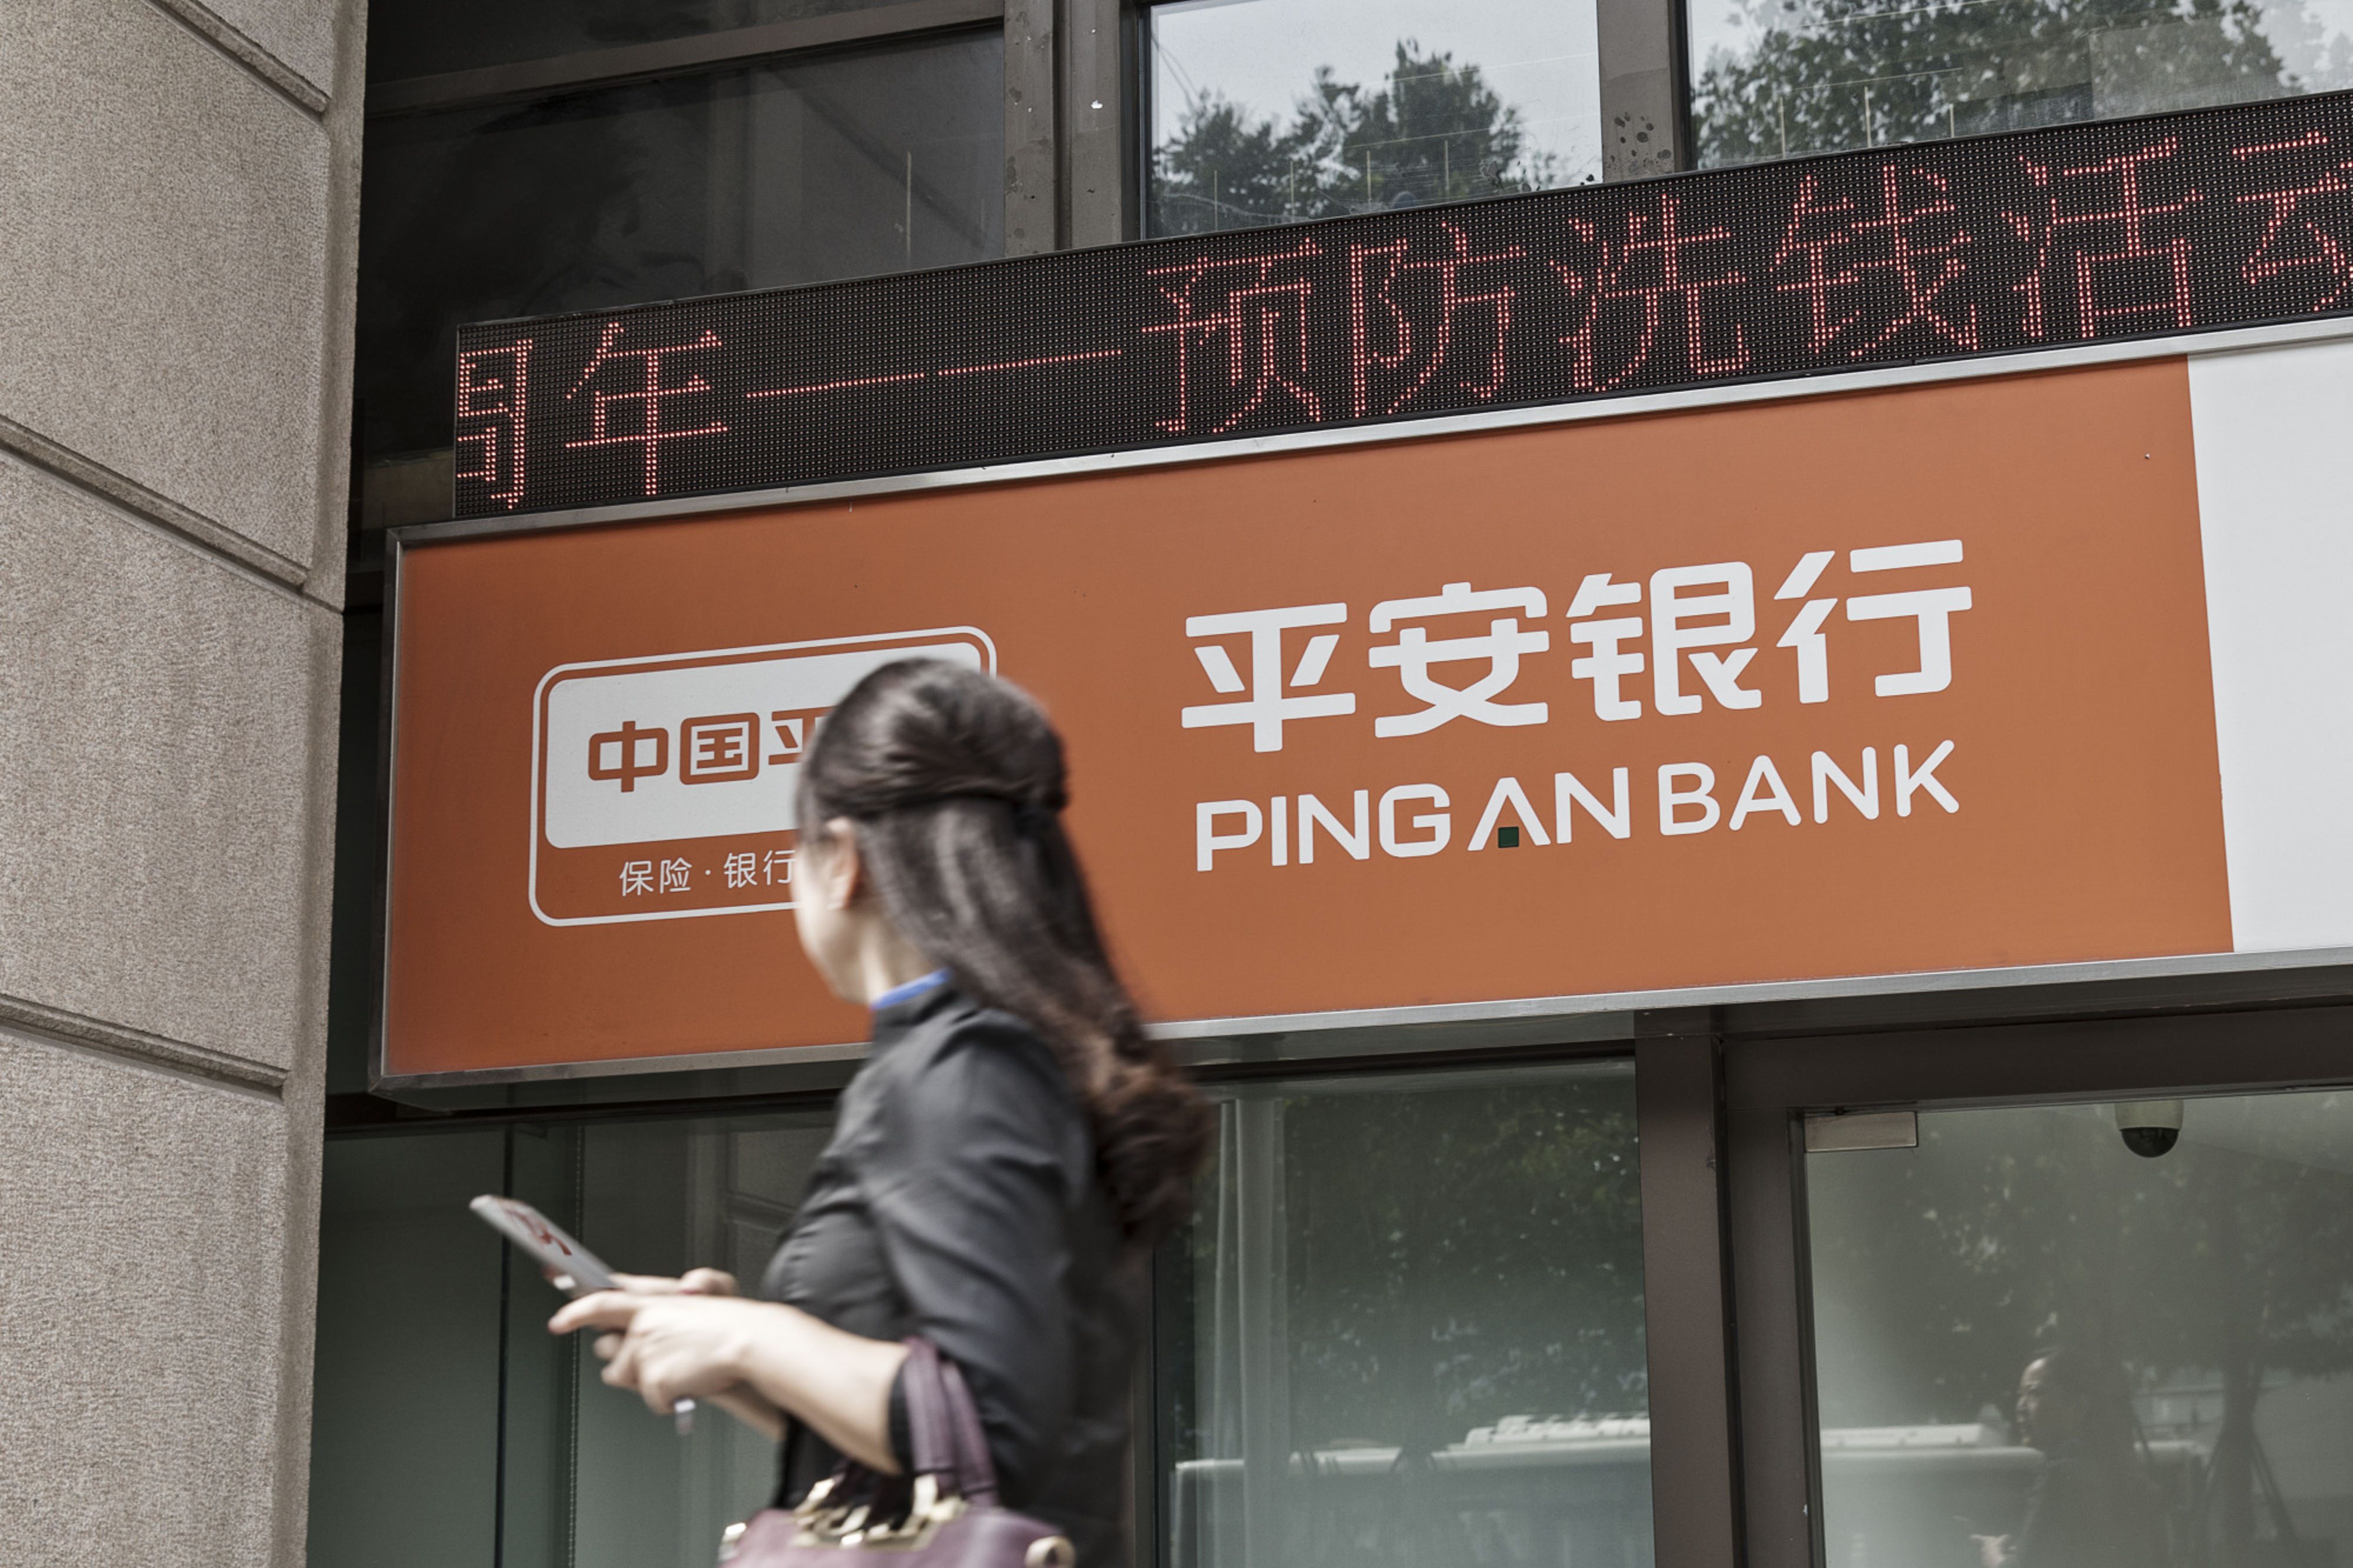 Bank returns. Pingan китайская компания. Компания Ping an insurance. China Life insurance и Ping an insurance. Ping an insurance Group logo.